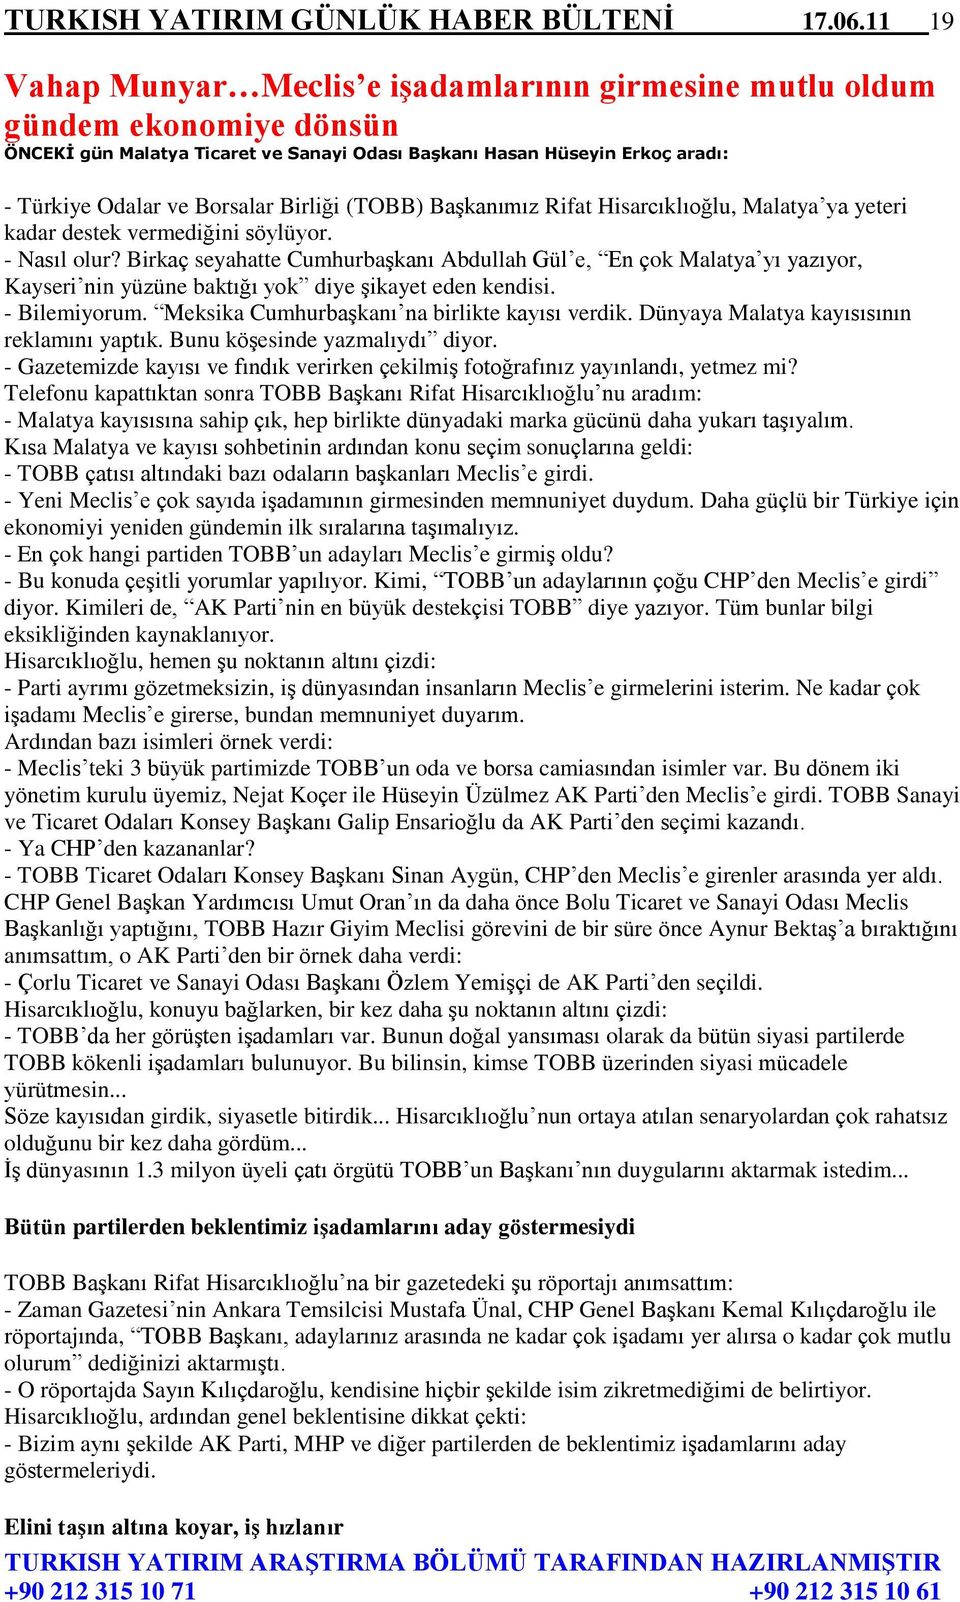 Birliği (TOBB) Başkanımız Rifat Hisarcıklıoğlu, Malatya ya yeteri kadar destek vermediğini söylüyor. - Nasıl olur?